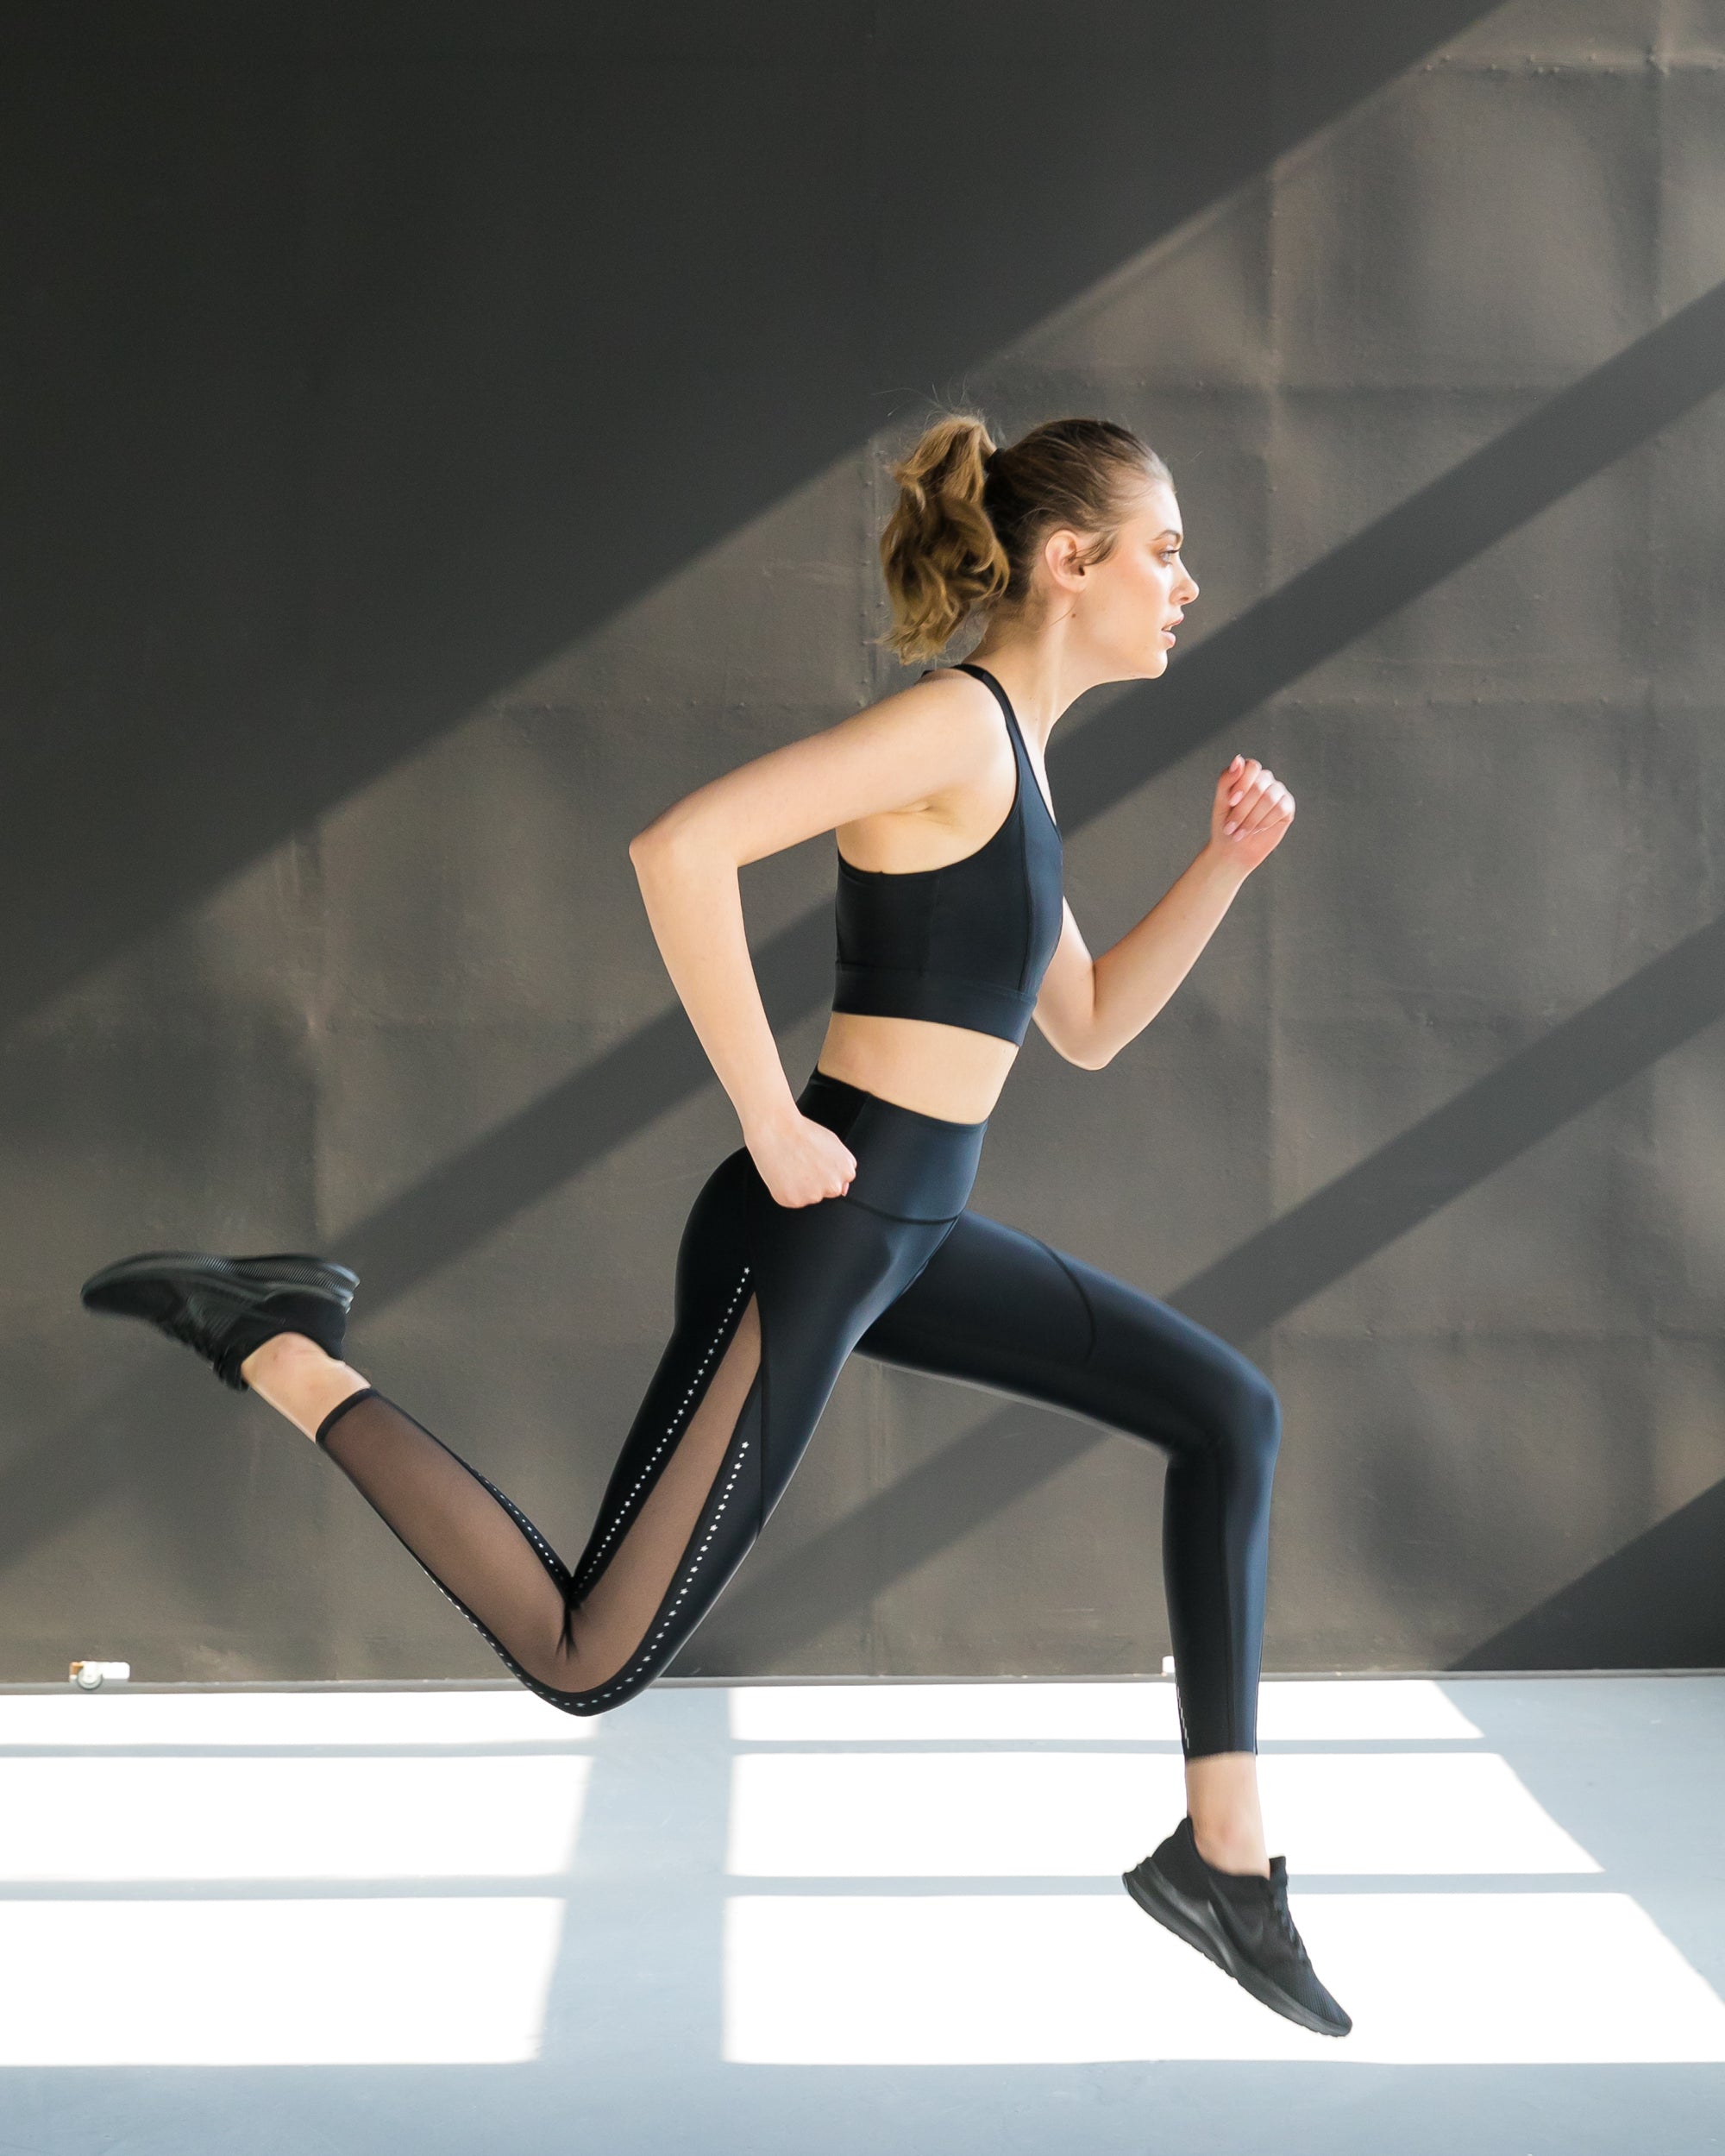 Sheer yoga leggings - Activewear manufacturer Sportswear